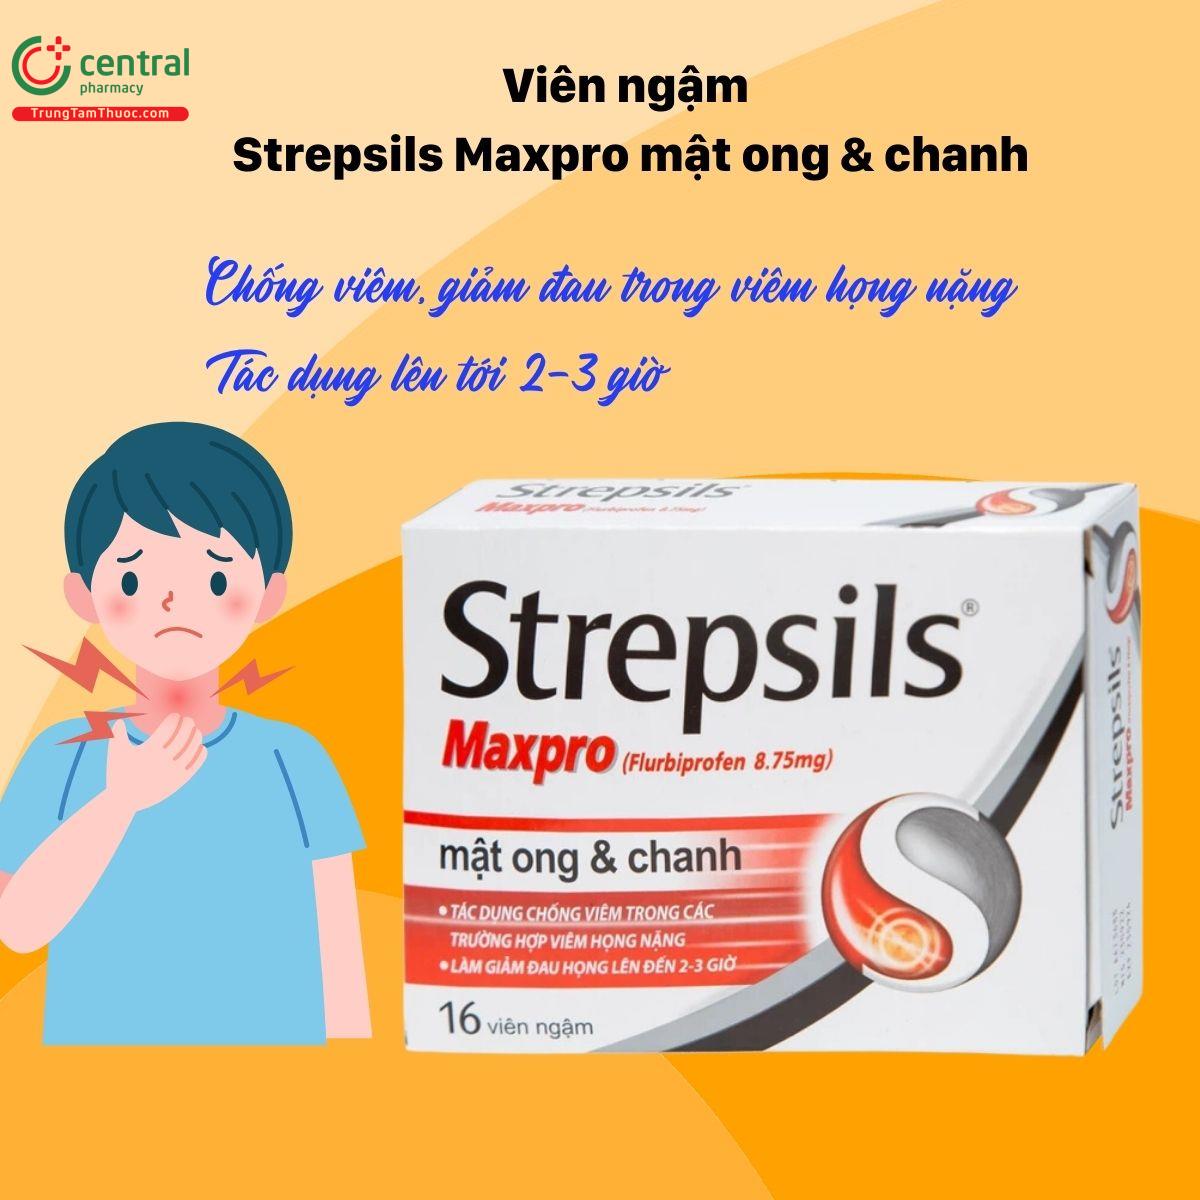 Thuốc Strepsils Maxpro giảm viêm, đau trong viêm họng nặng